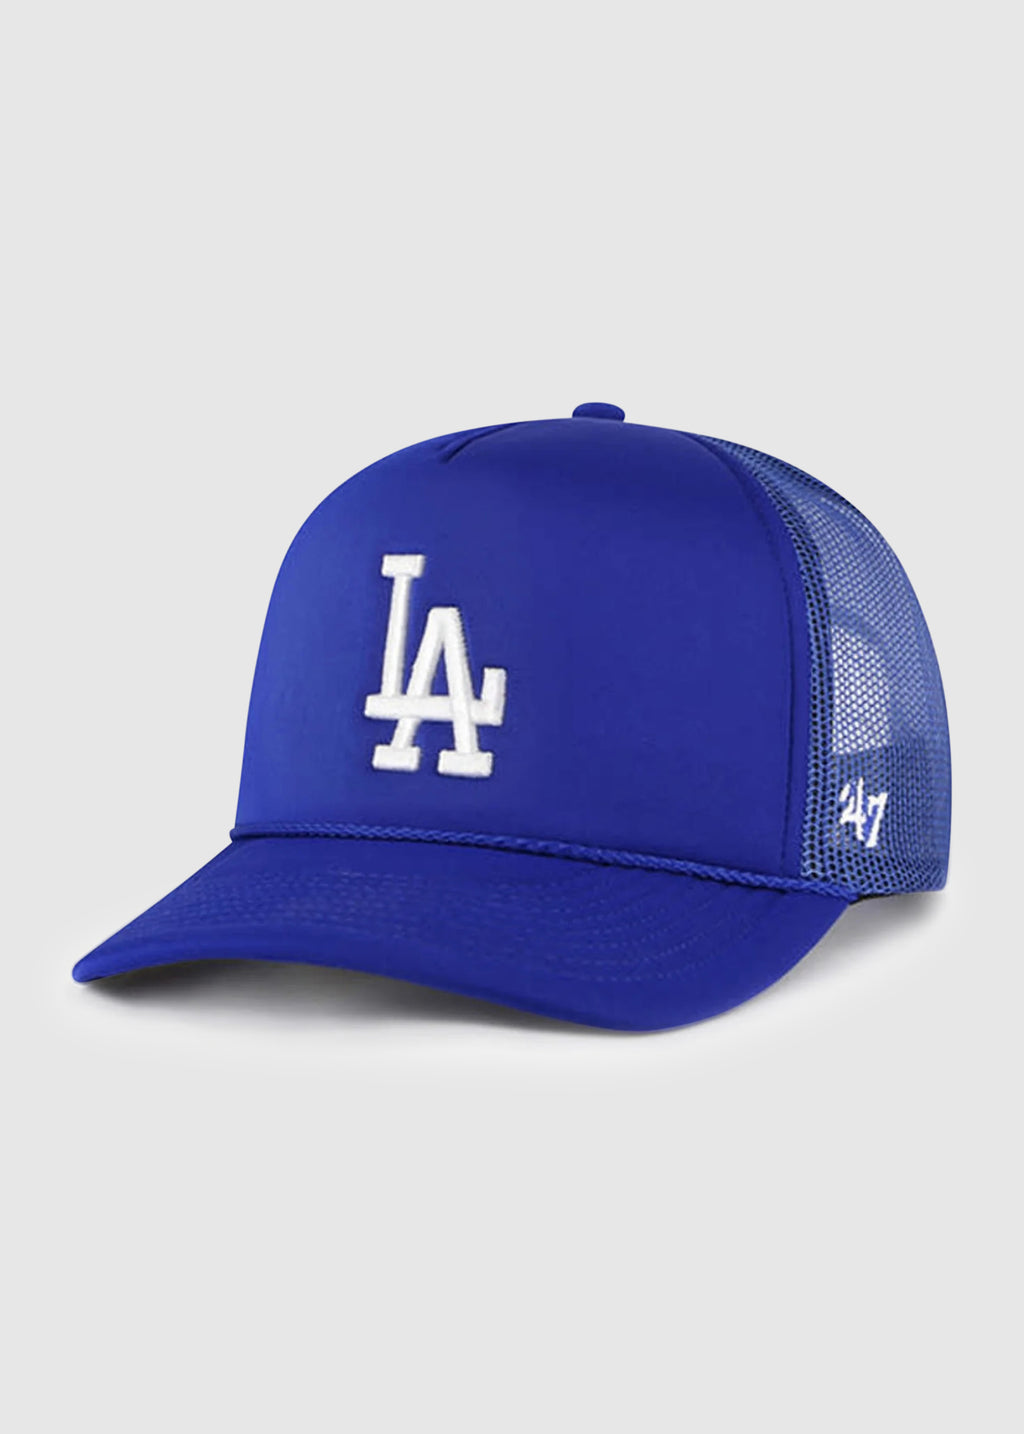 LA Dodgers New Era MLB Clean Trucker Royal Blue Cap